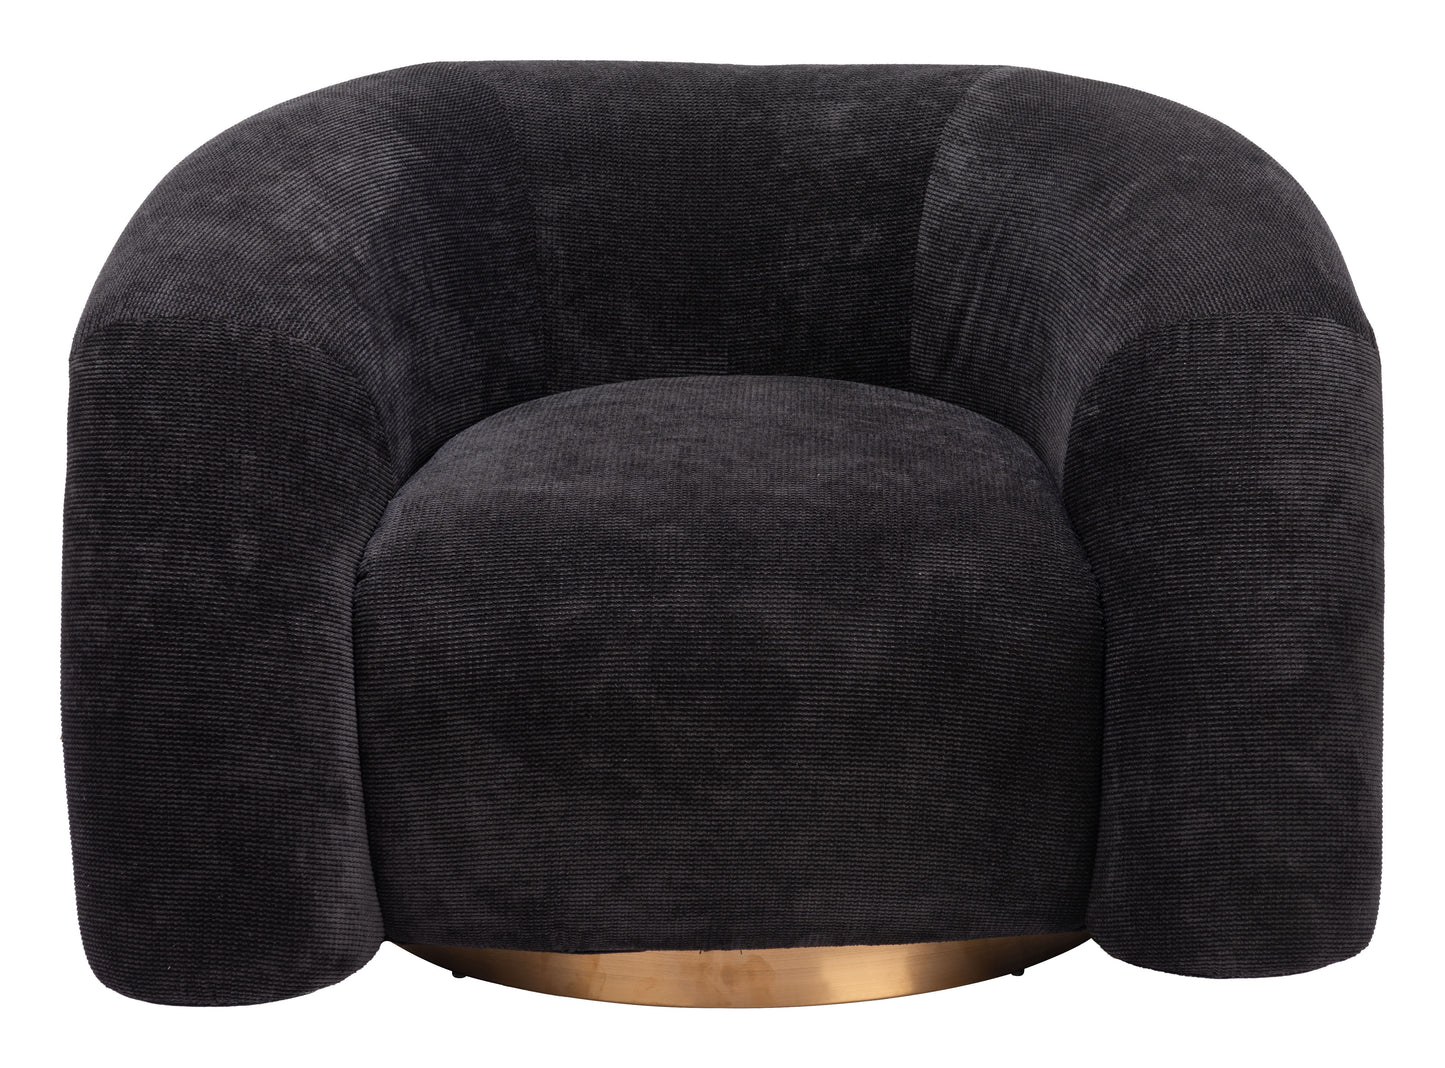 Havn - Accent Chair - Black